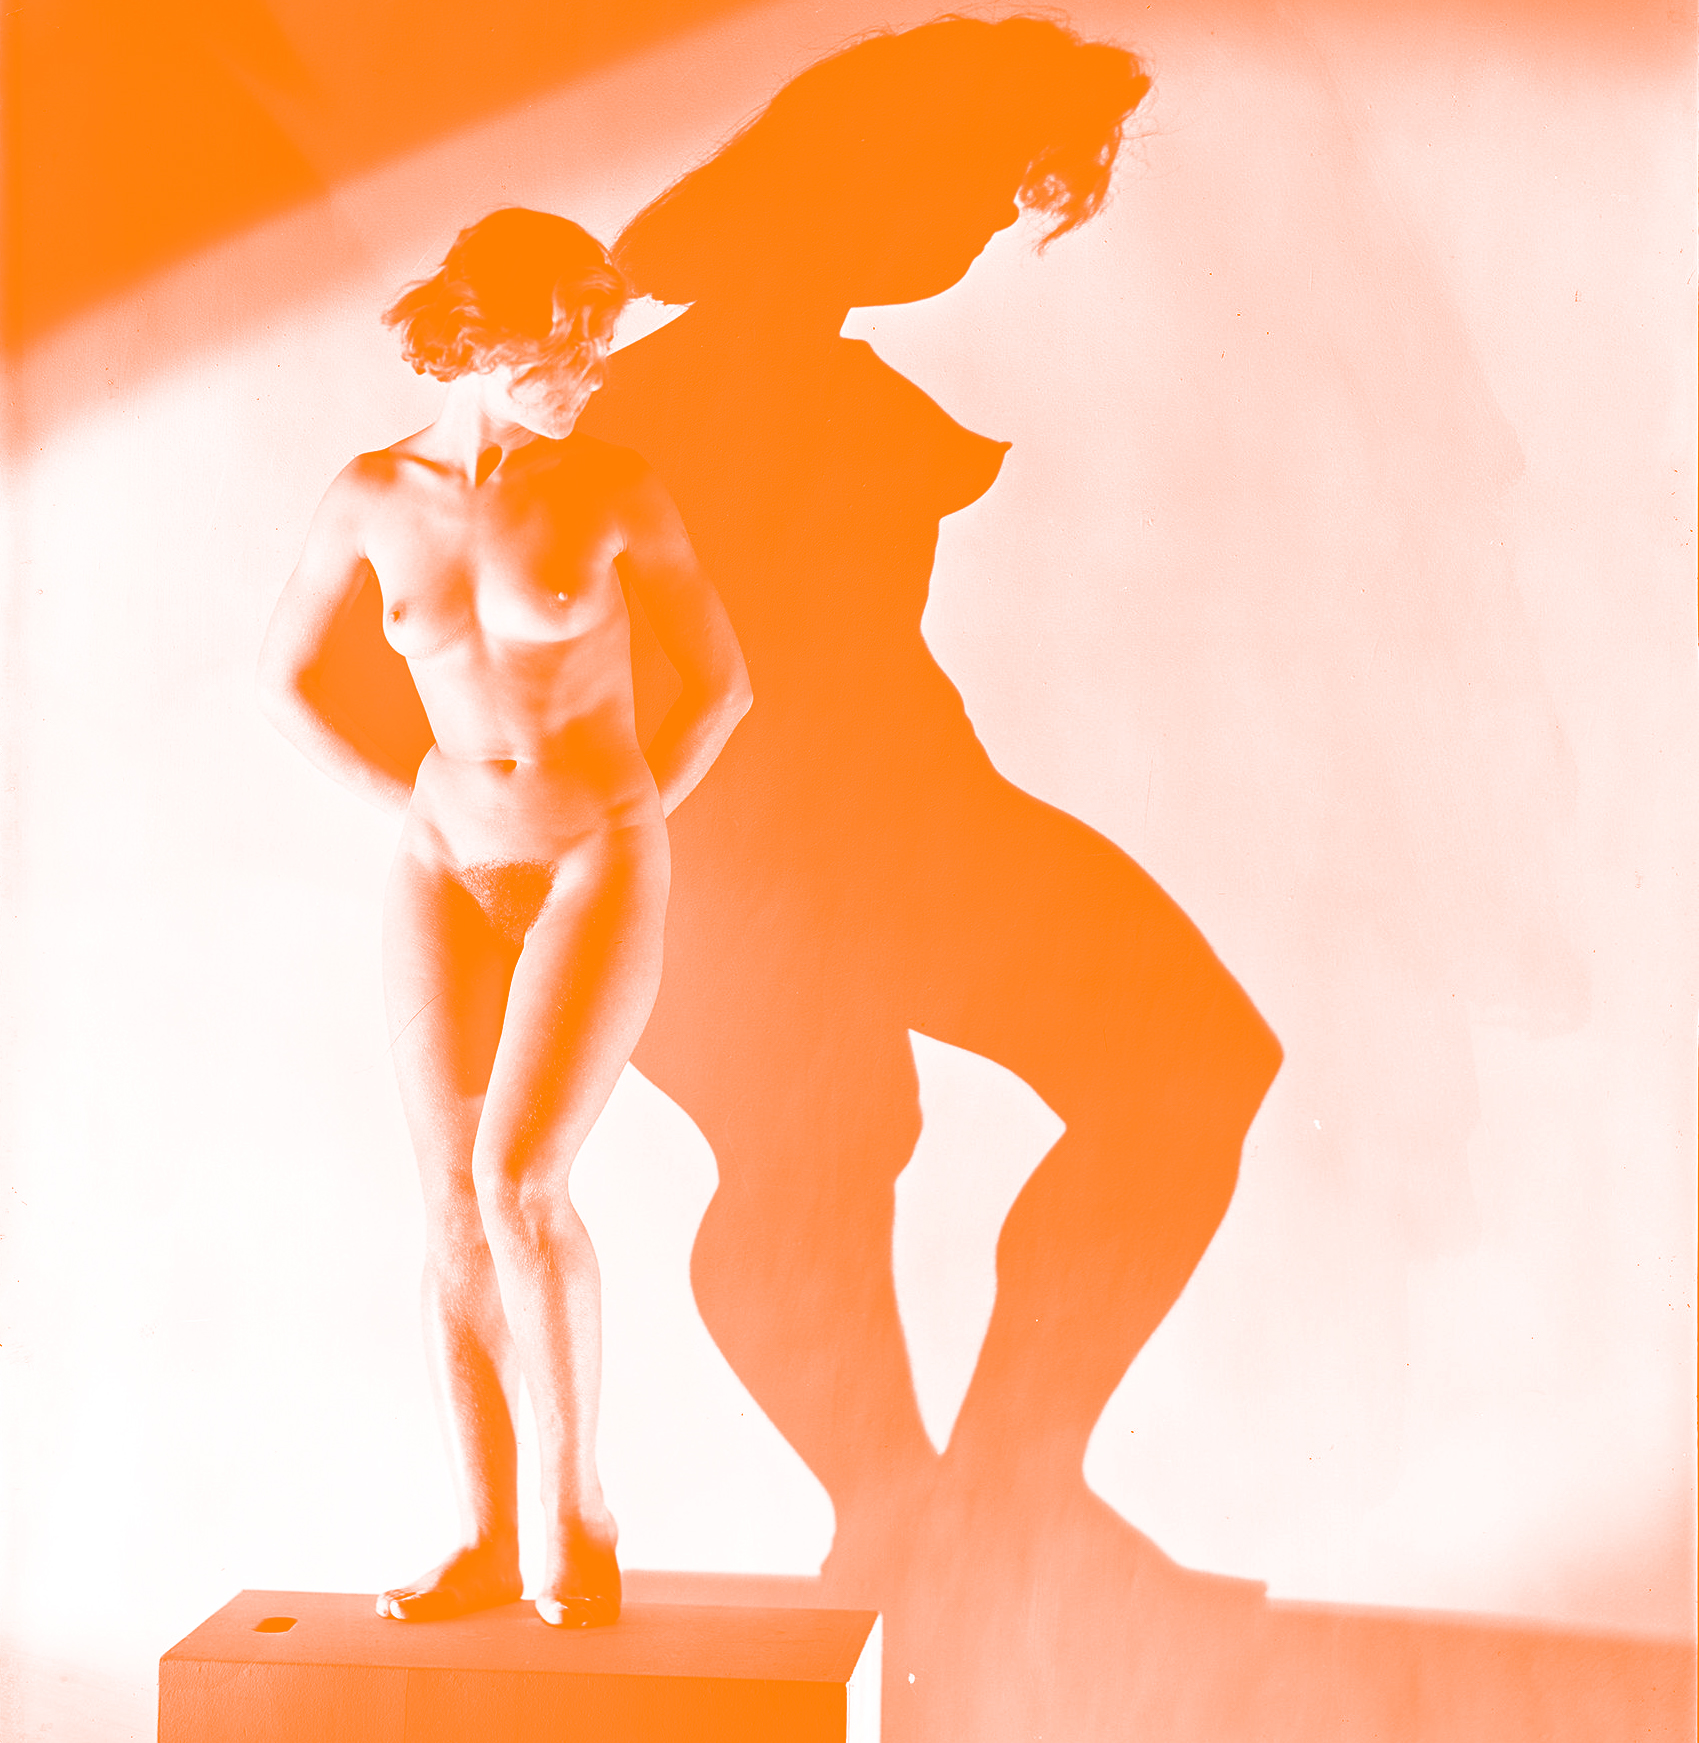 Photographie en noir et blanc, avec une femme nue, adossée à un mur qui déforme son ombre